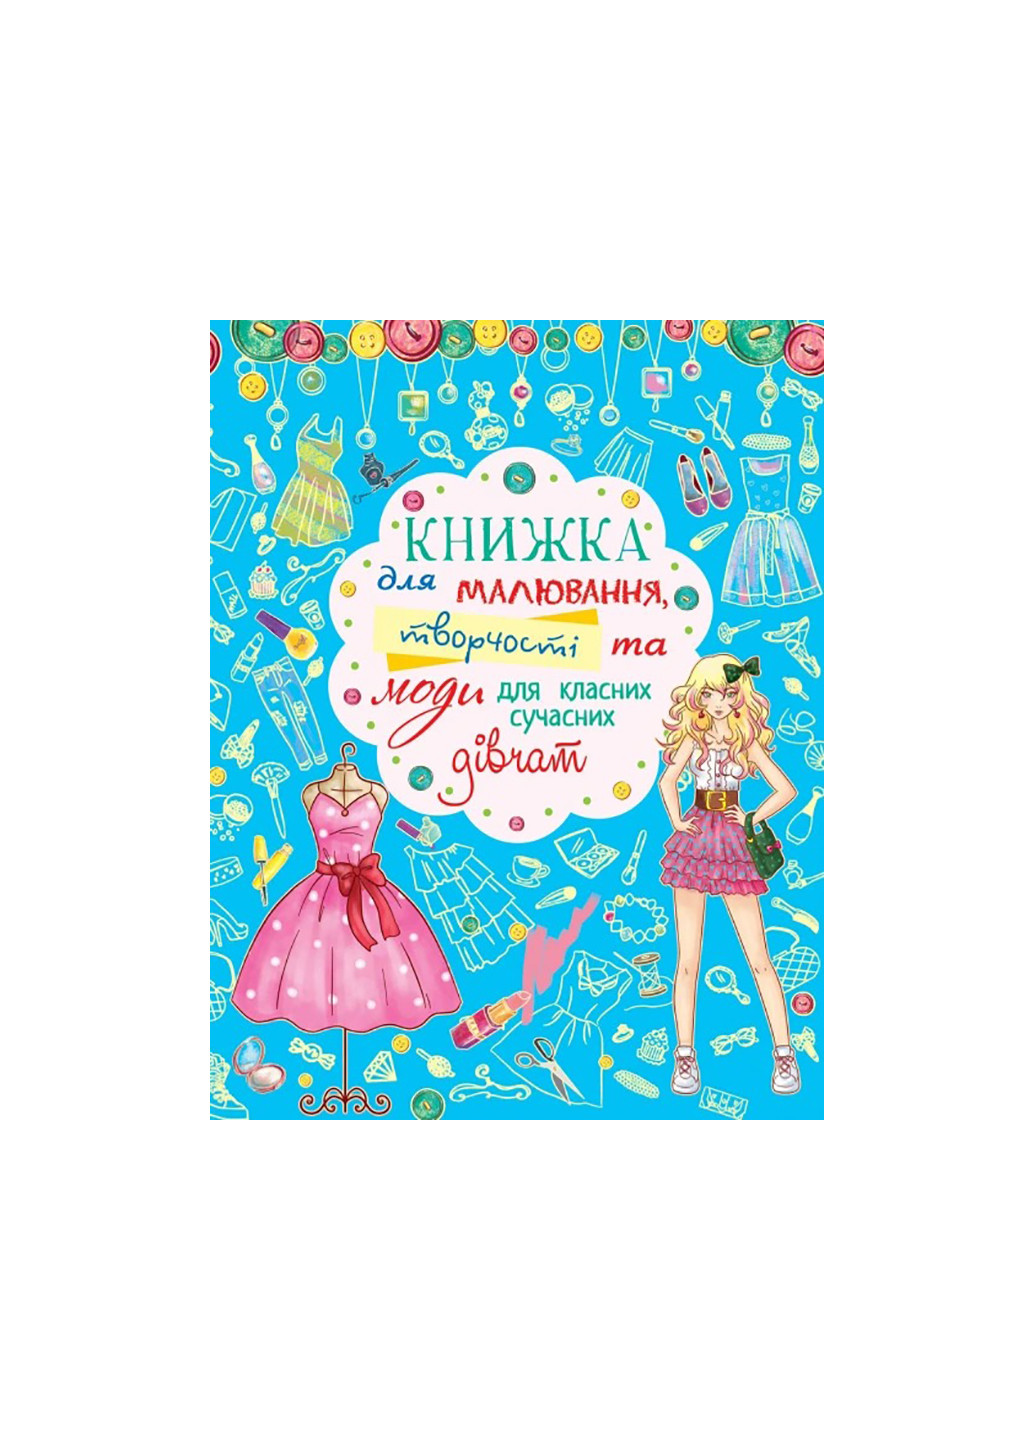 Книга Книга для рисования, творчества и моды для классных современных девушек 2483 Crystal Book (259861499)